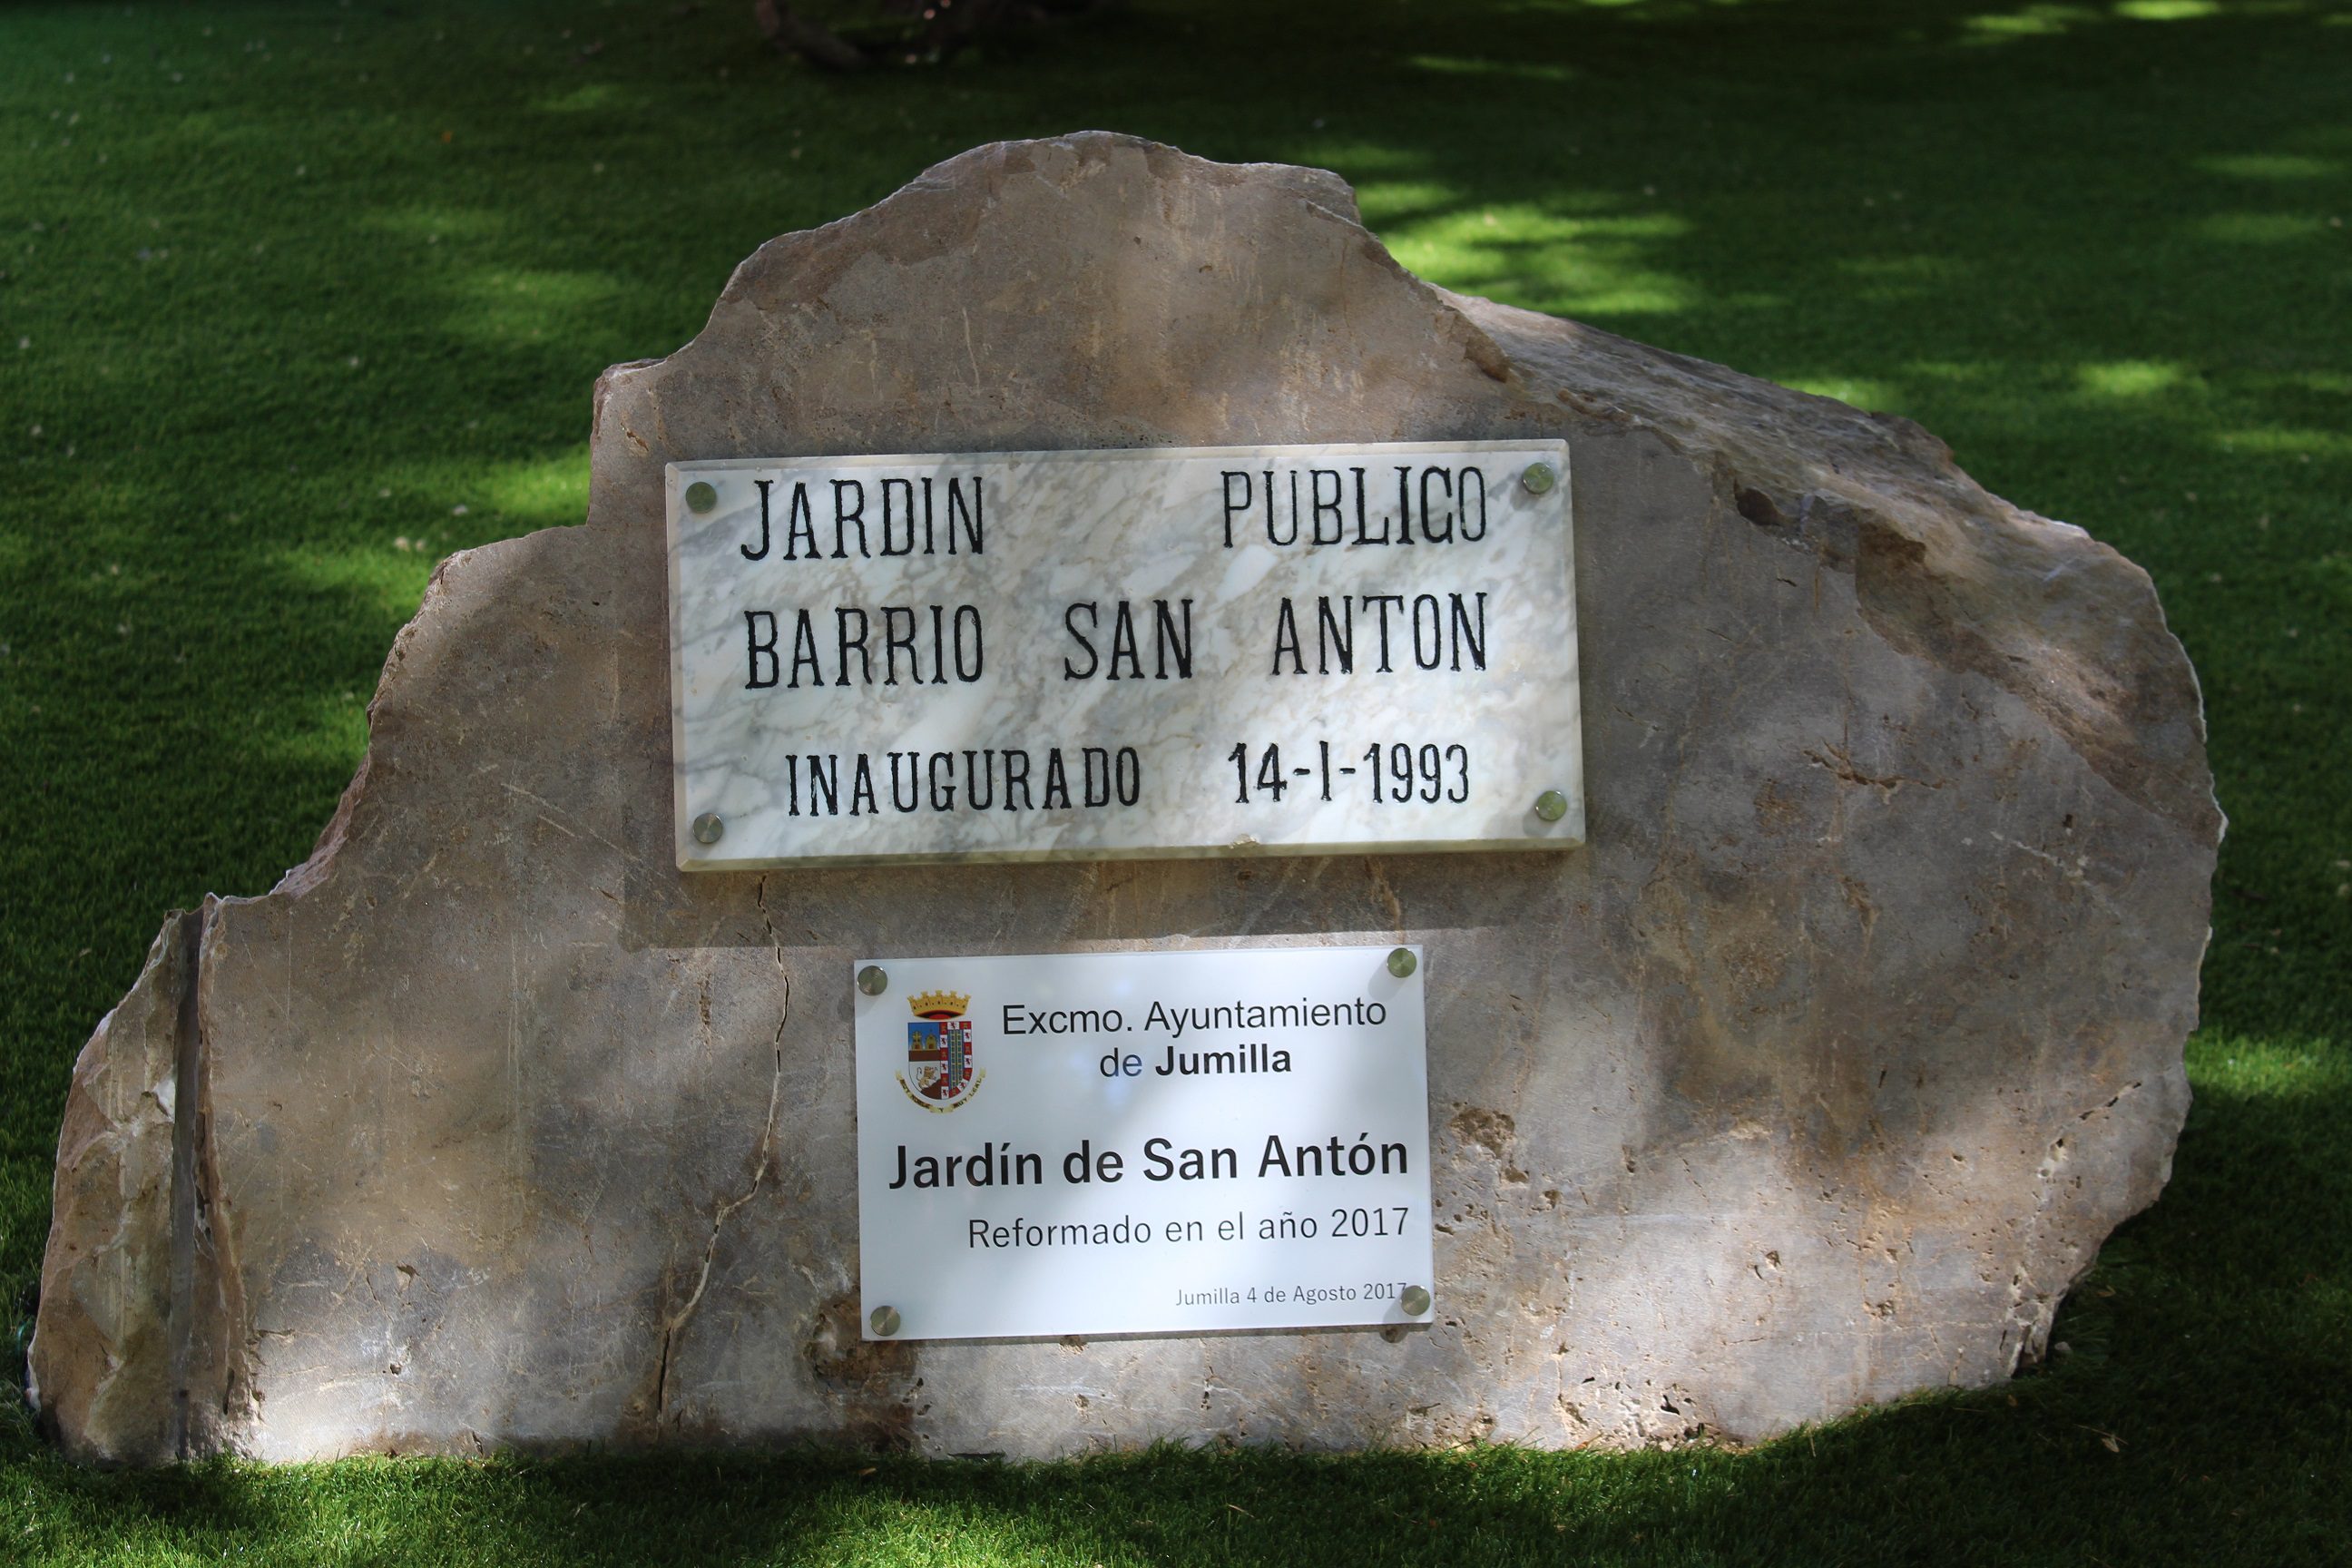 El jardín del barrio de San Antón se remodela y acondiciona tras 25 años desde su inauguración